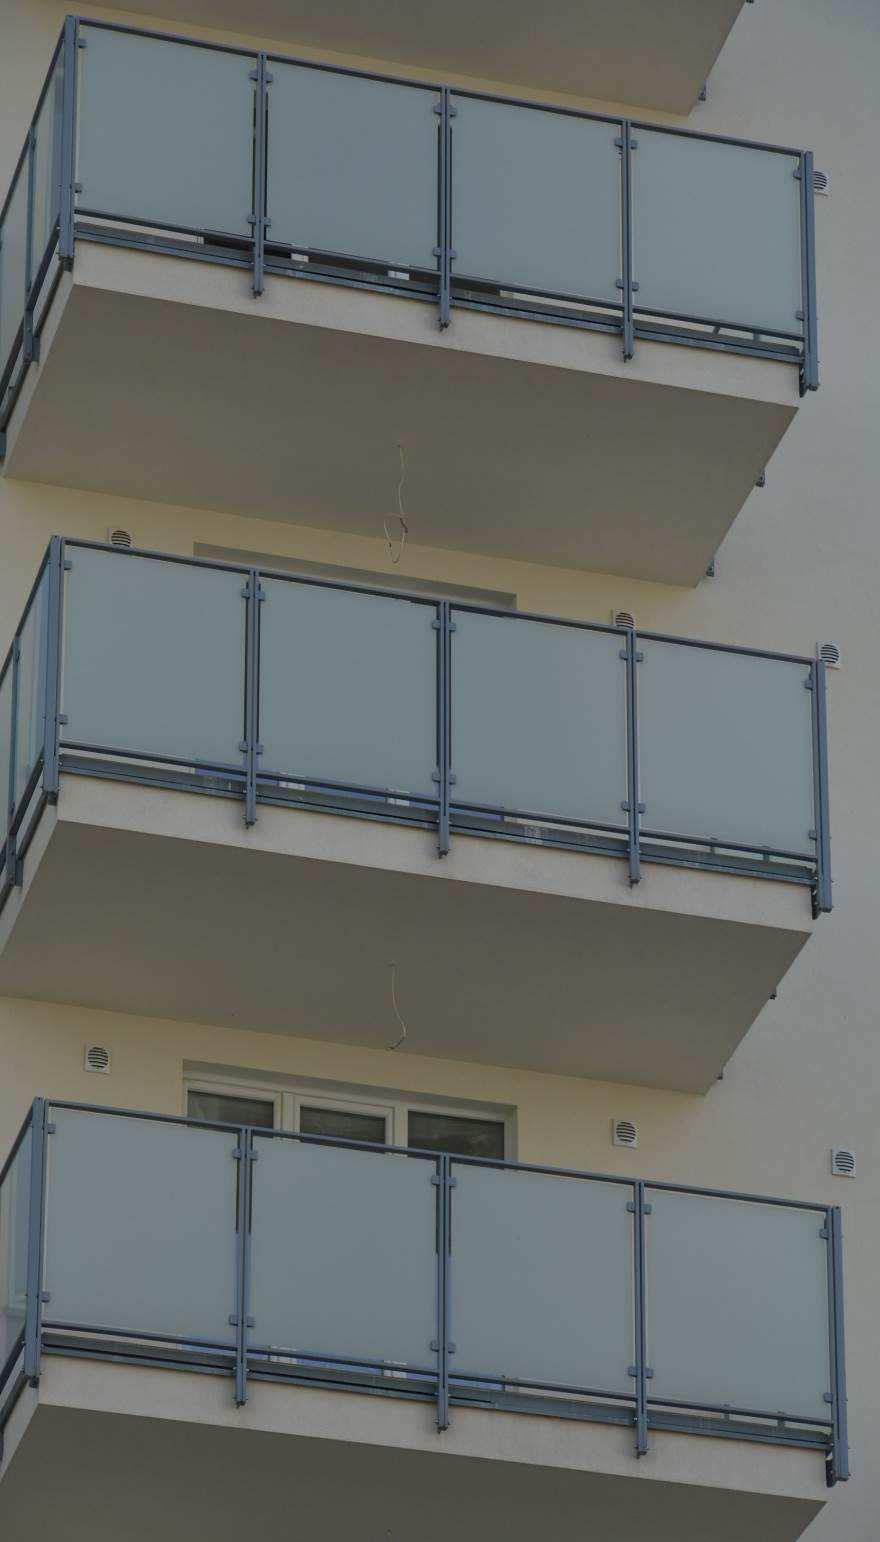 Co nazywamy balustradą? Balustrada ażurowe lub pełne zabezpieczenie (ogrodzenie) schodów, tarasów, balkonów, dachów, wiaduktów, mostów itp.